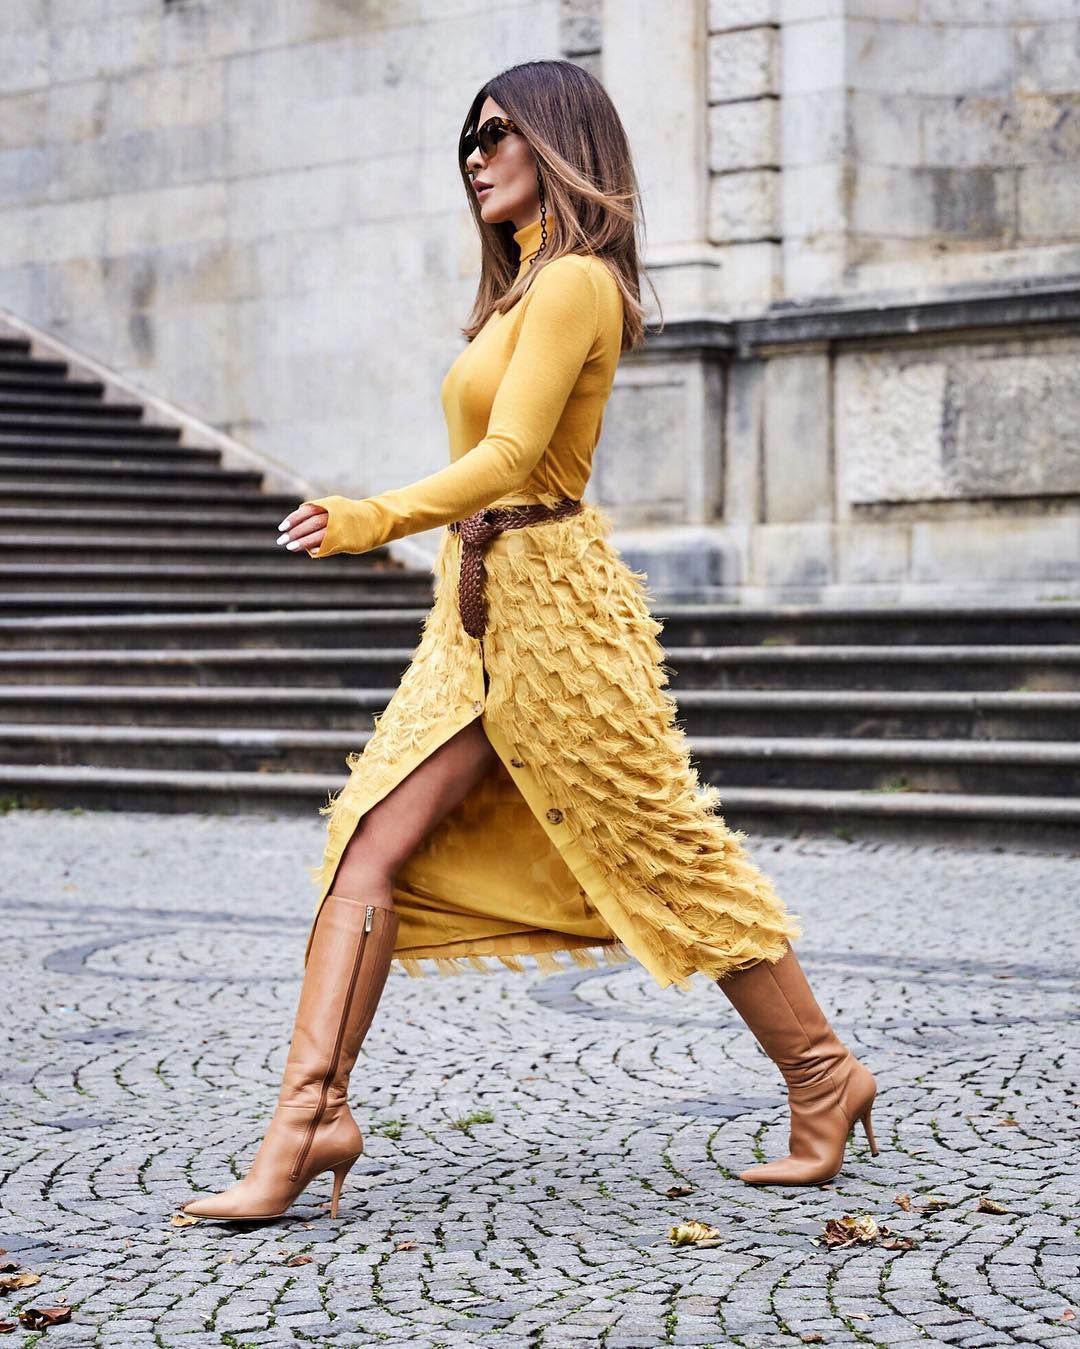 H&M, la instagramer y su falda de 30 euros han colapsado Instagram este fin de semana La falda de H&M que ha arrasado en Instagram